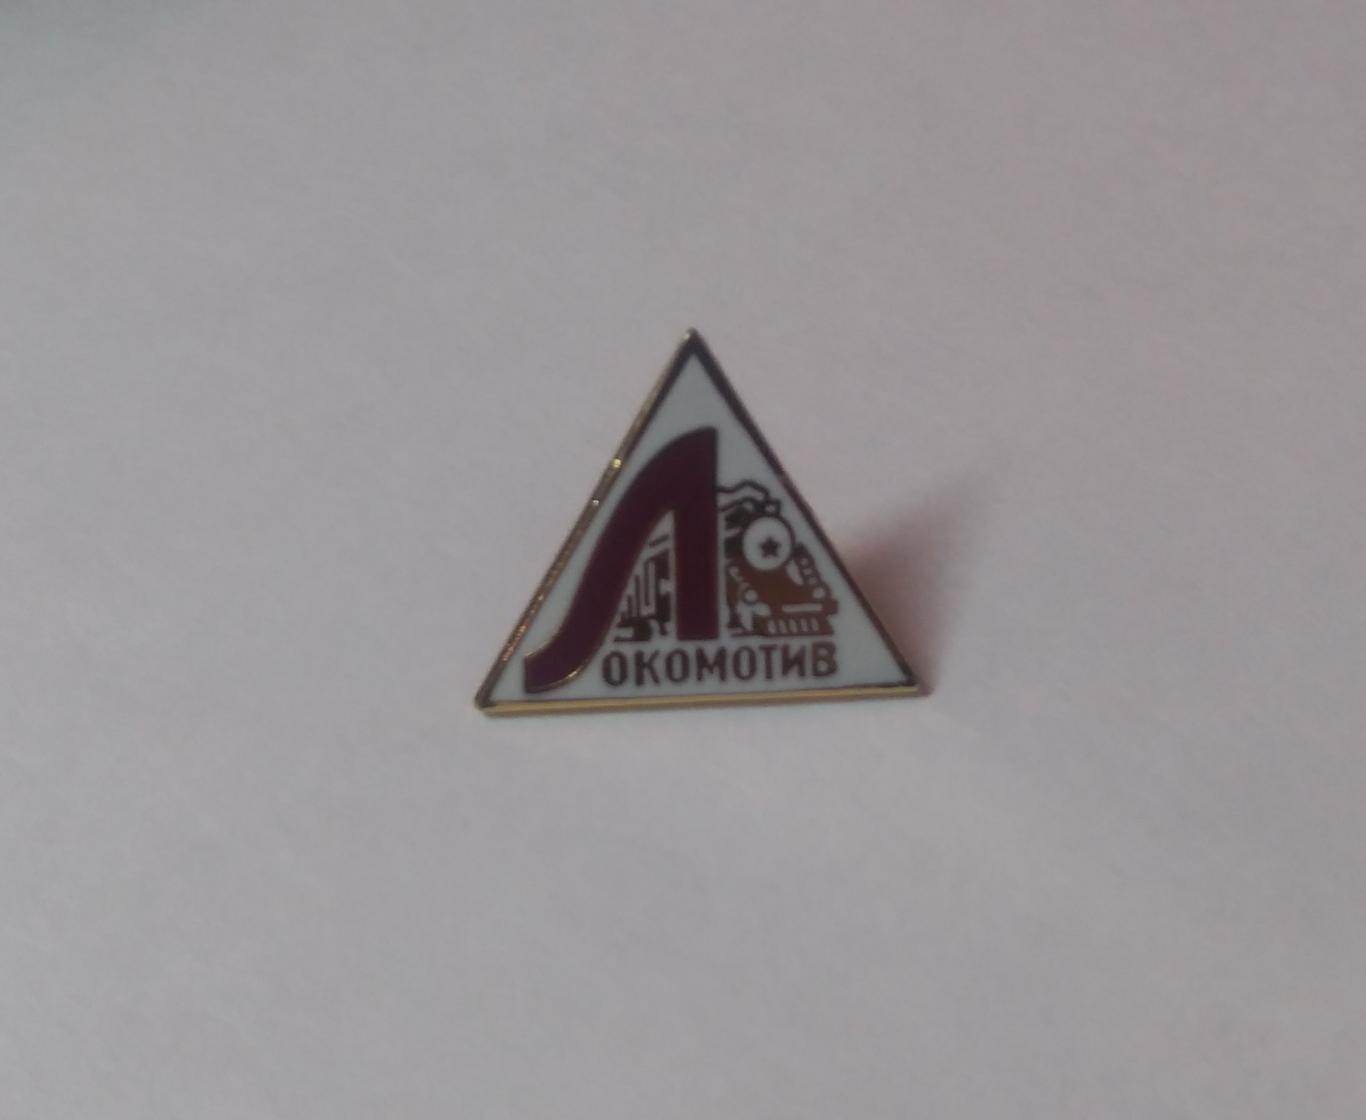 Локомотив Москва, ретро-лого, официальный